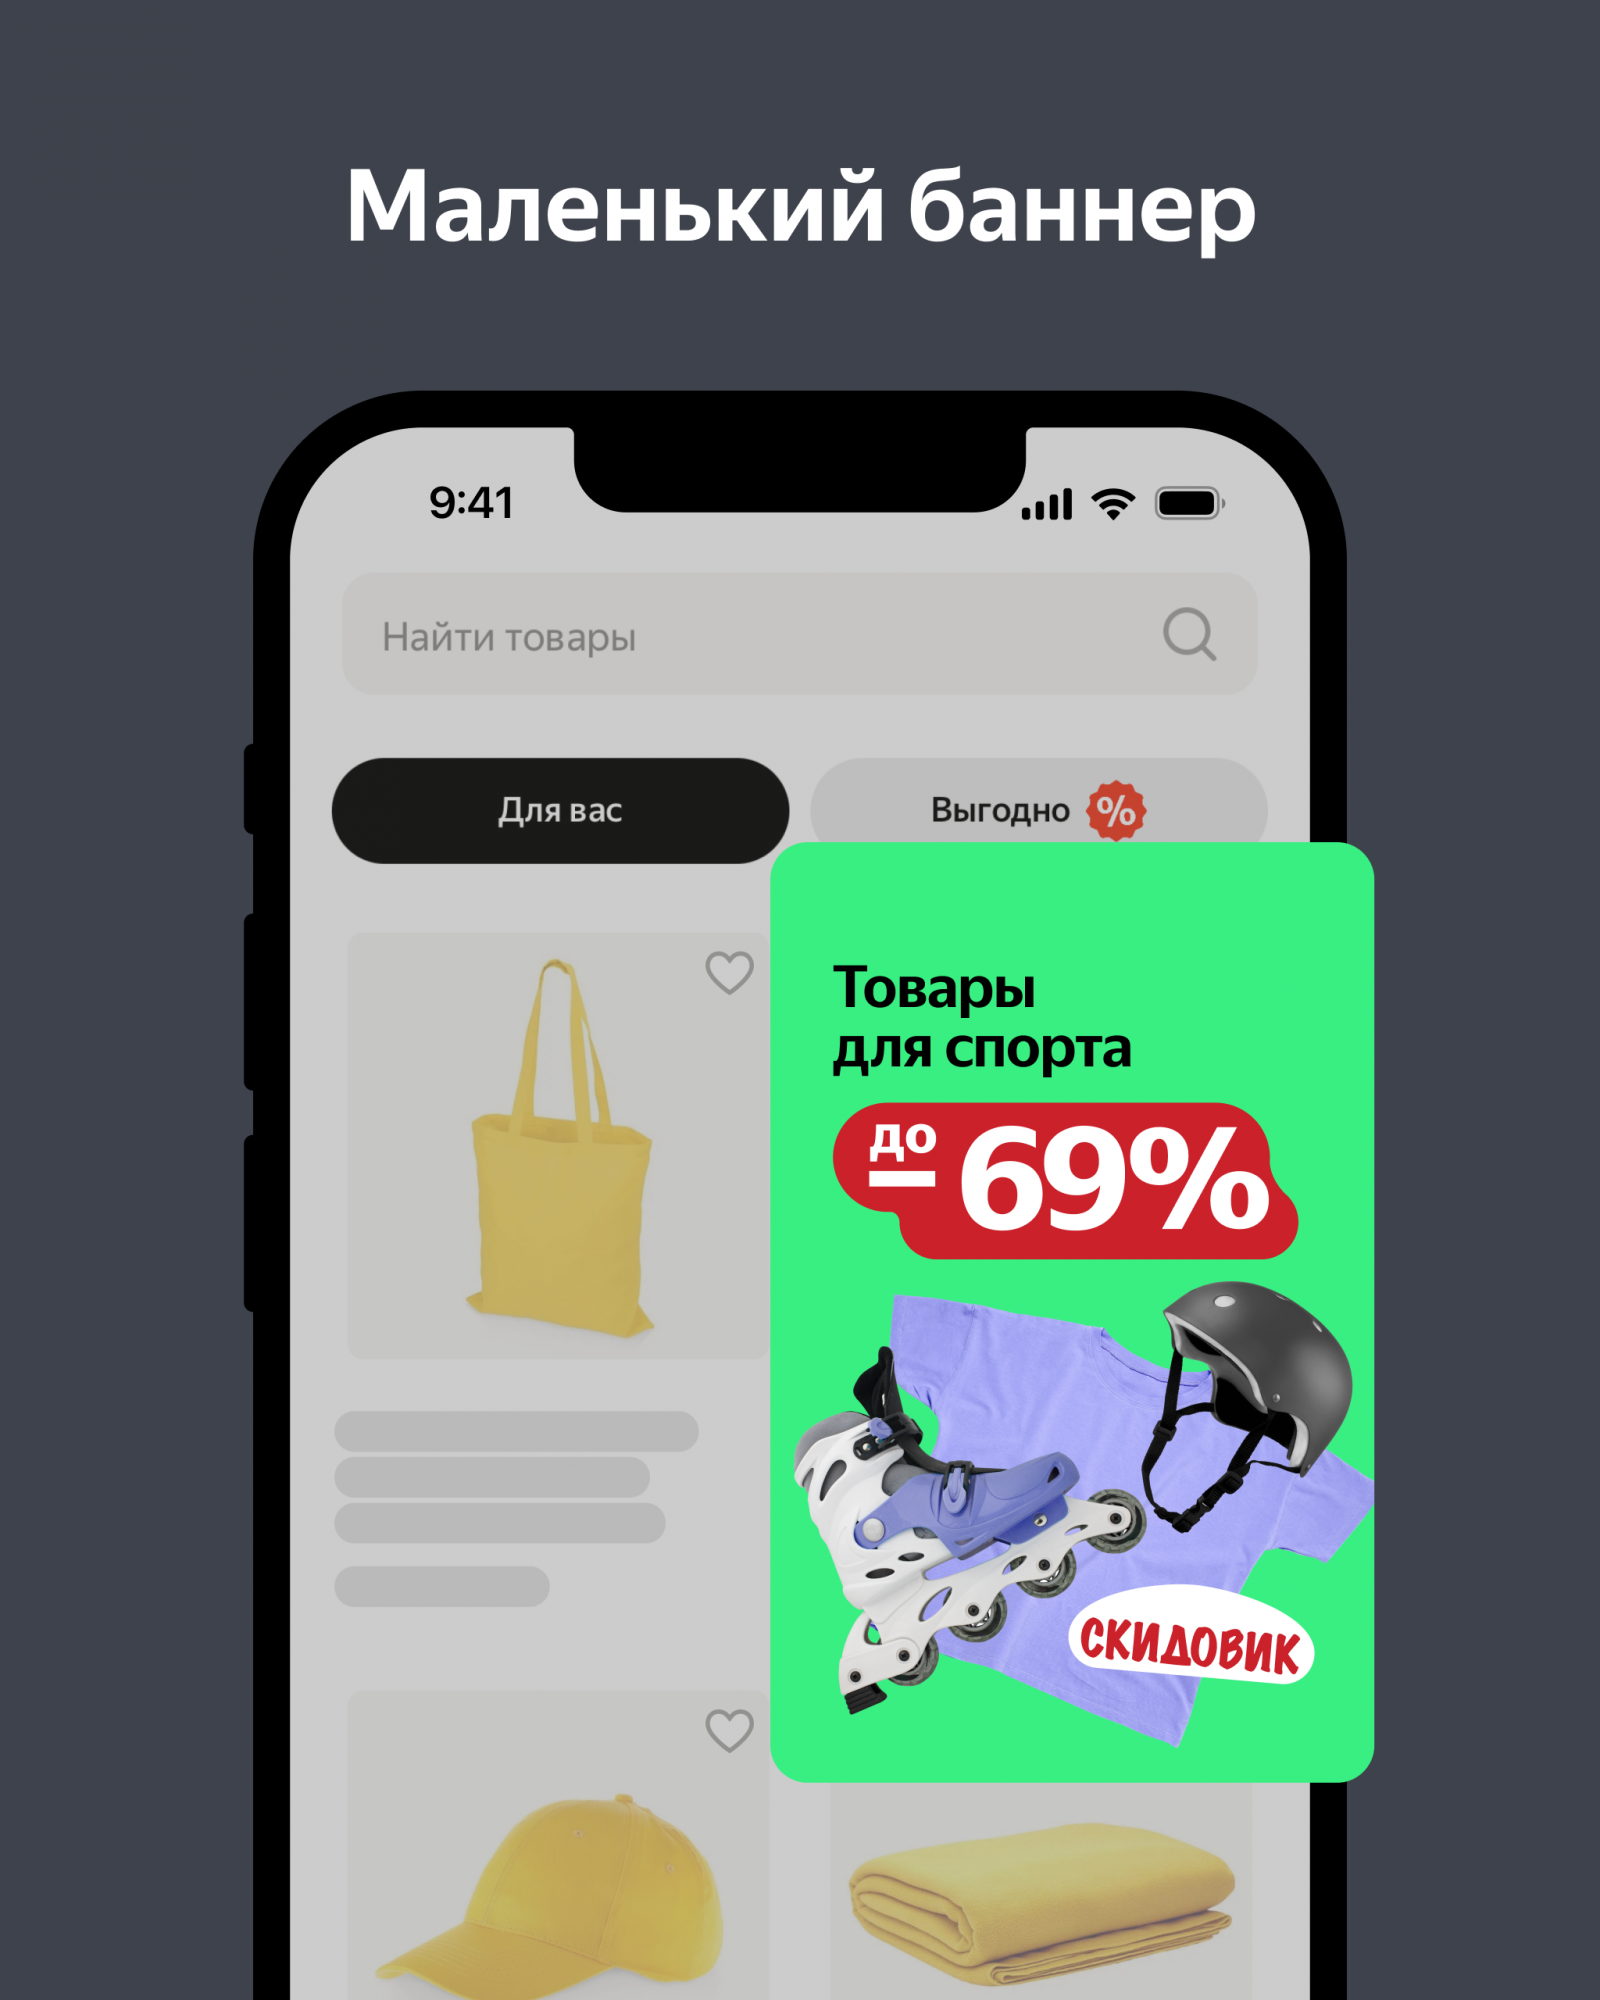 В Яндекс Маркете появился новый формат баннеров